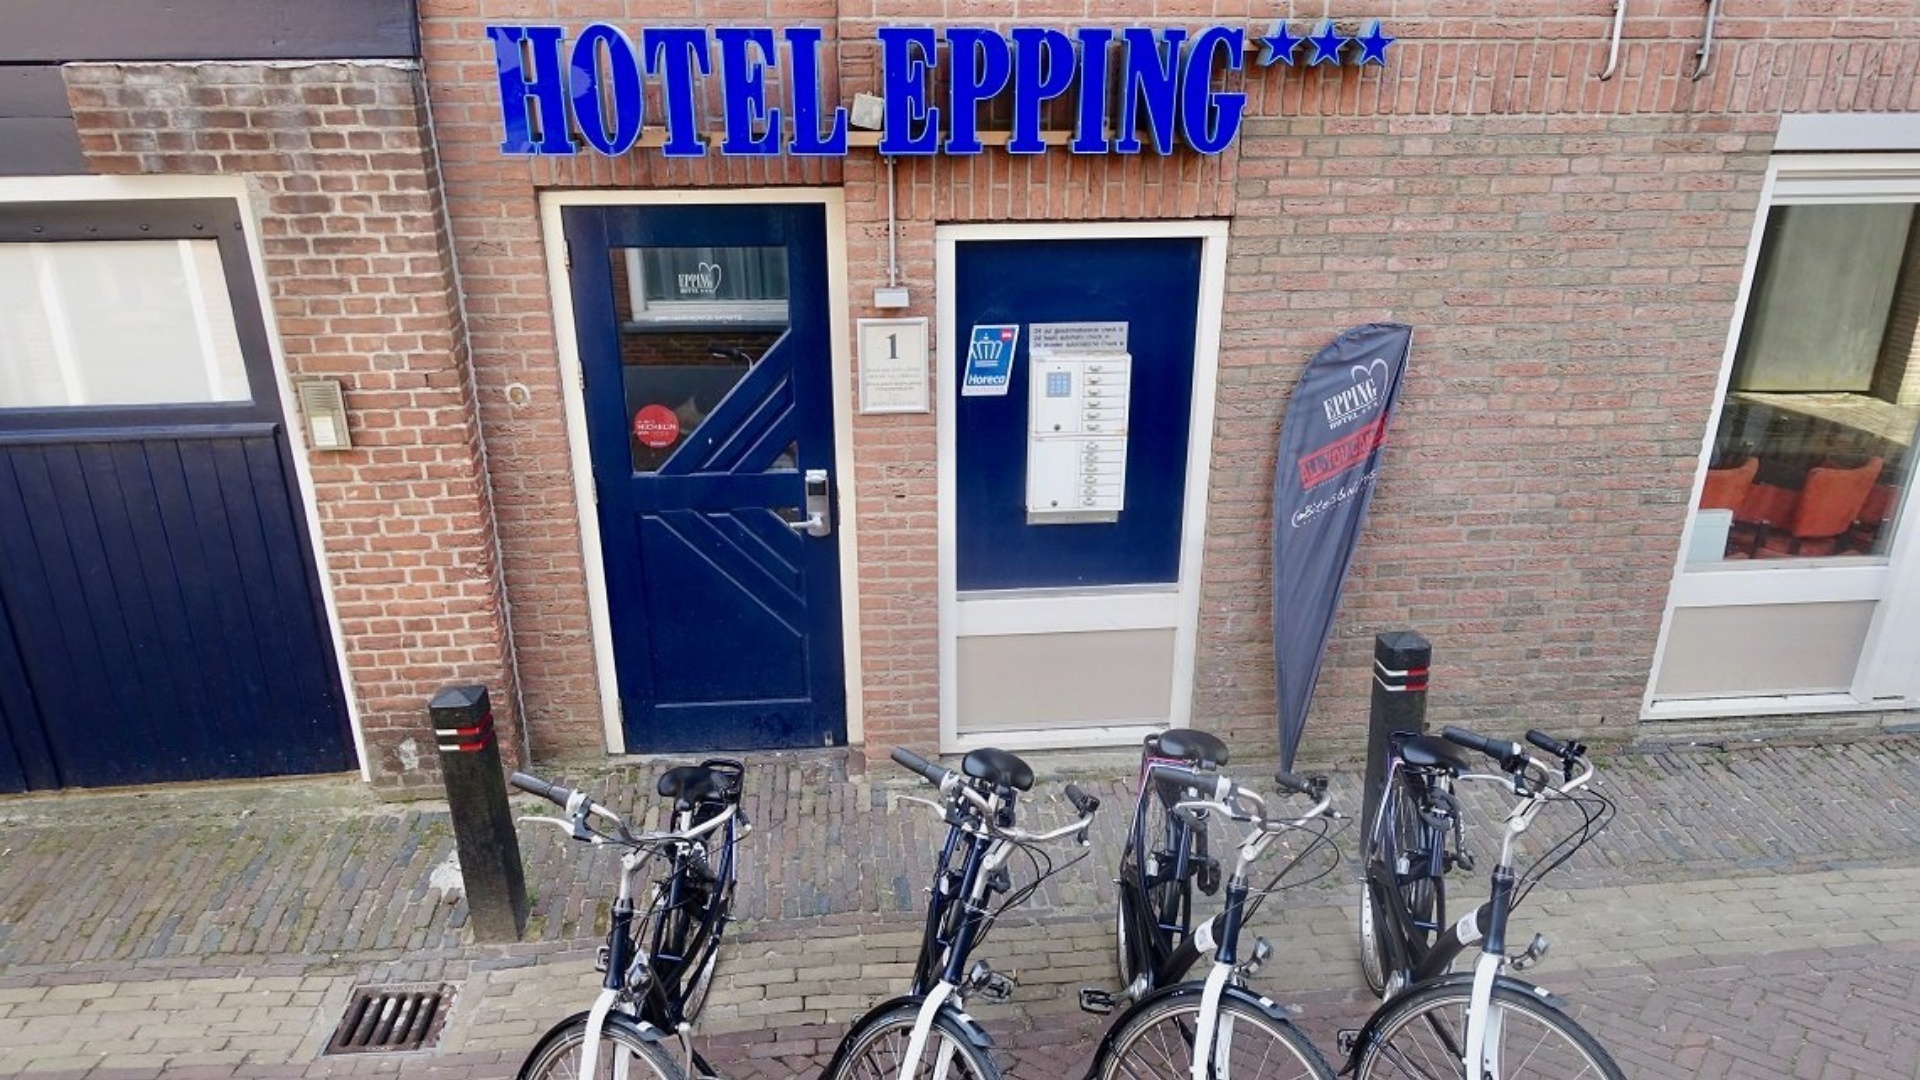 huurfietsen hotel Epping 